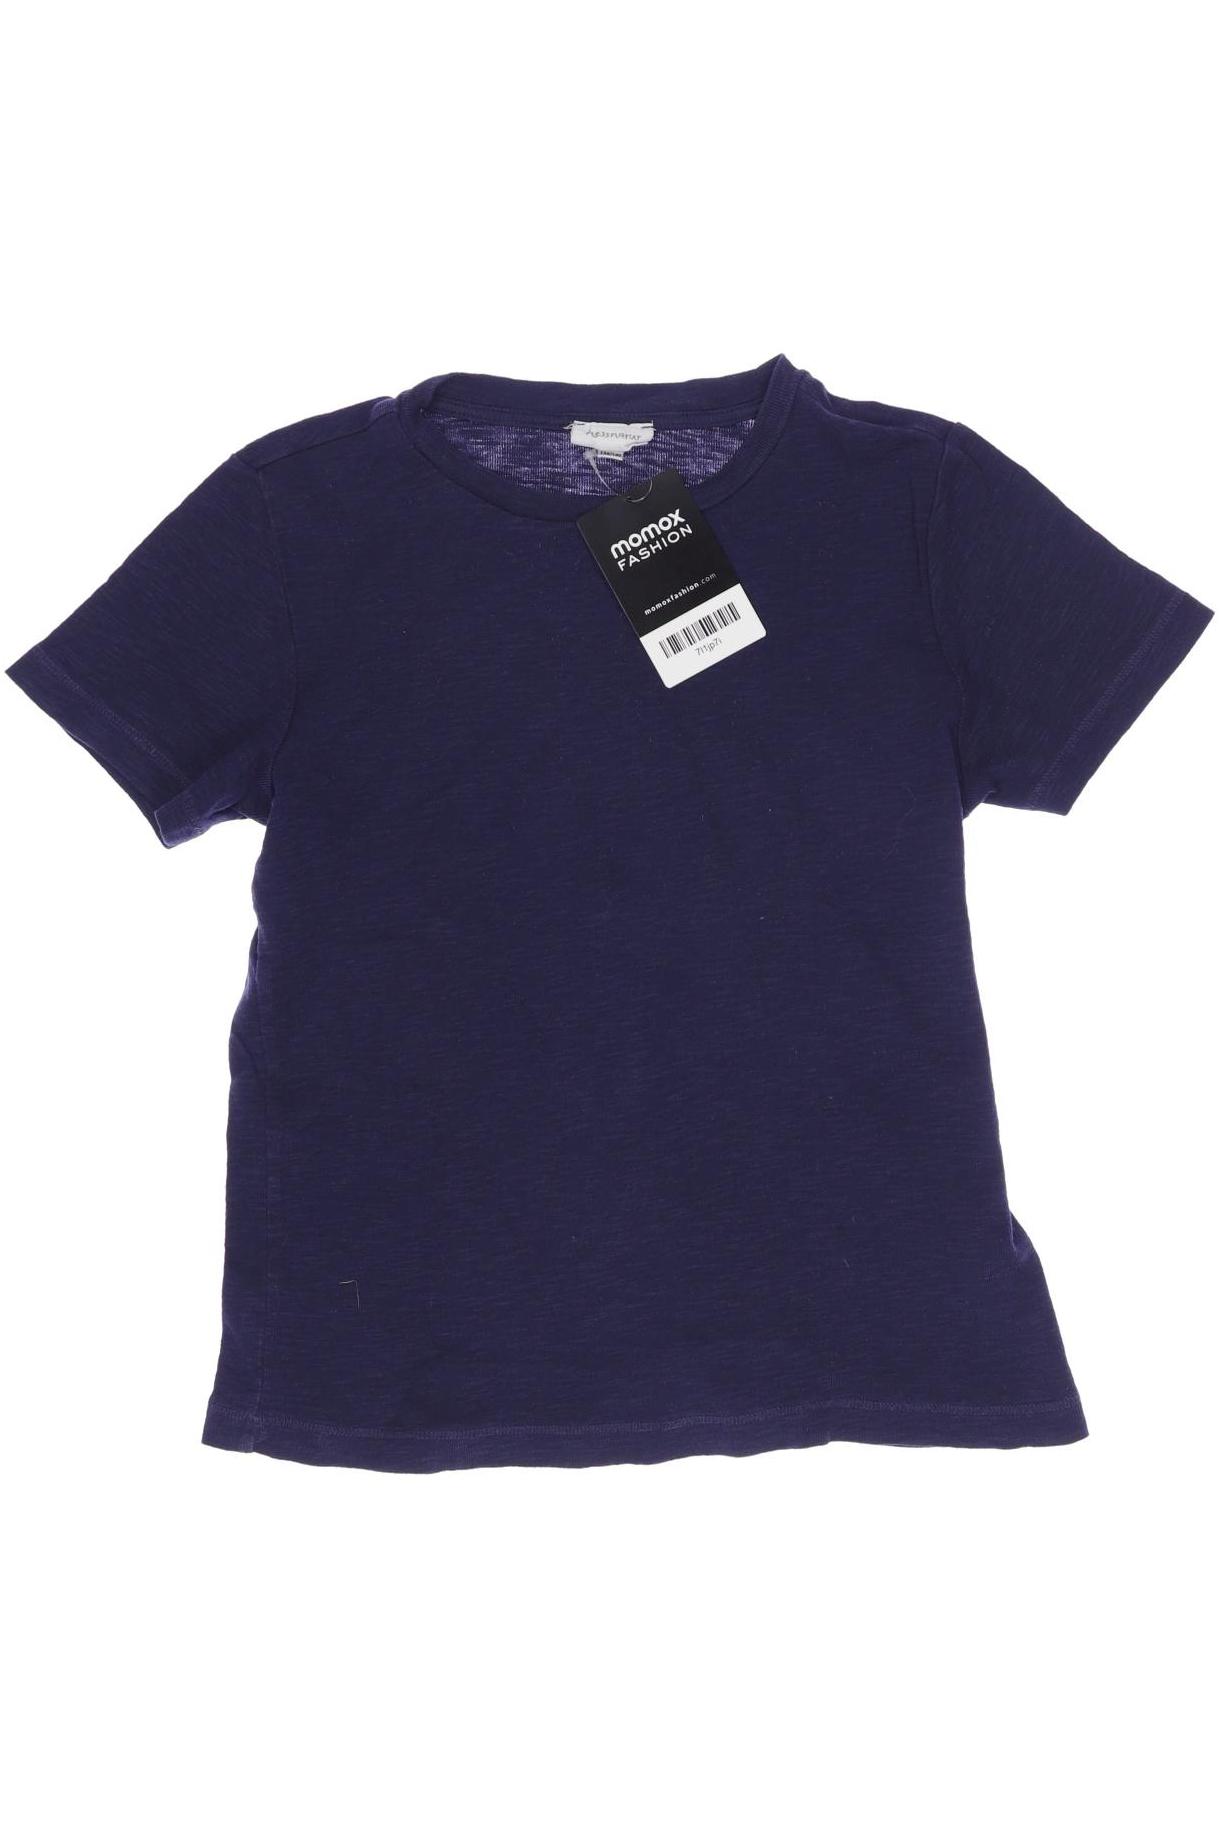 hessnatur Mädchen T-Shirt, marineblau von hessnatur